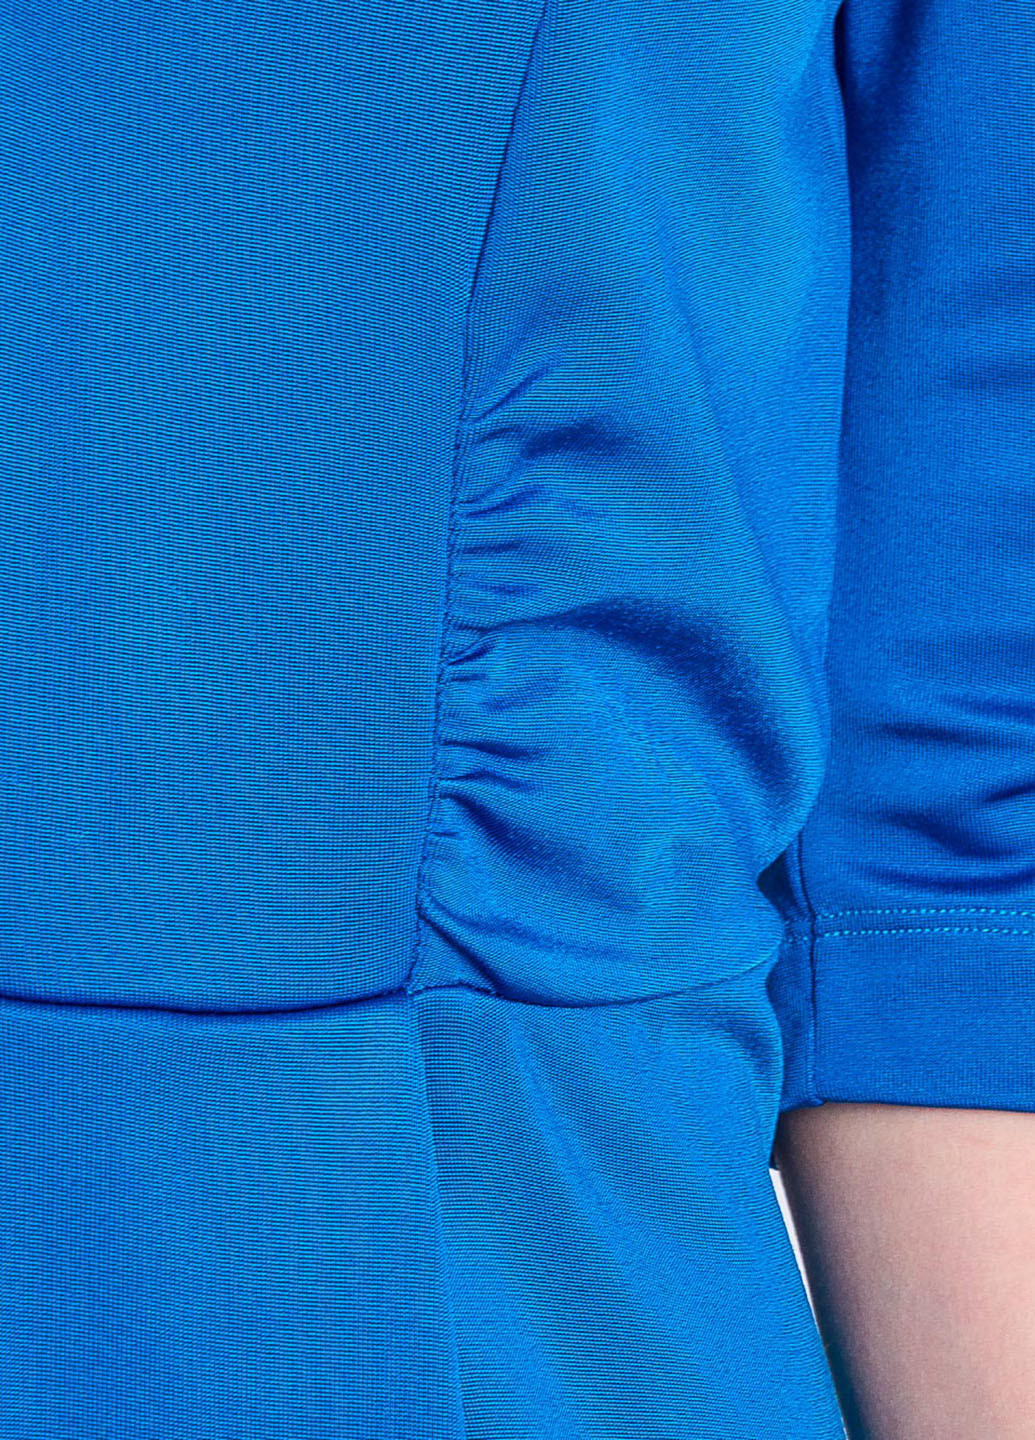 Светло-синее коктейльное платье клеш Love Moschino однотонное